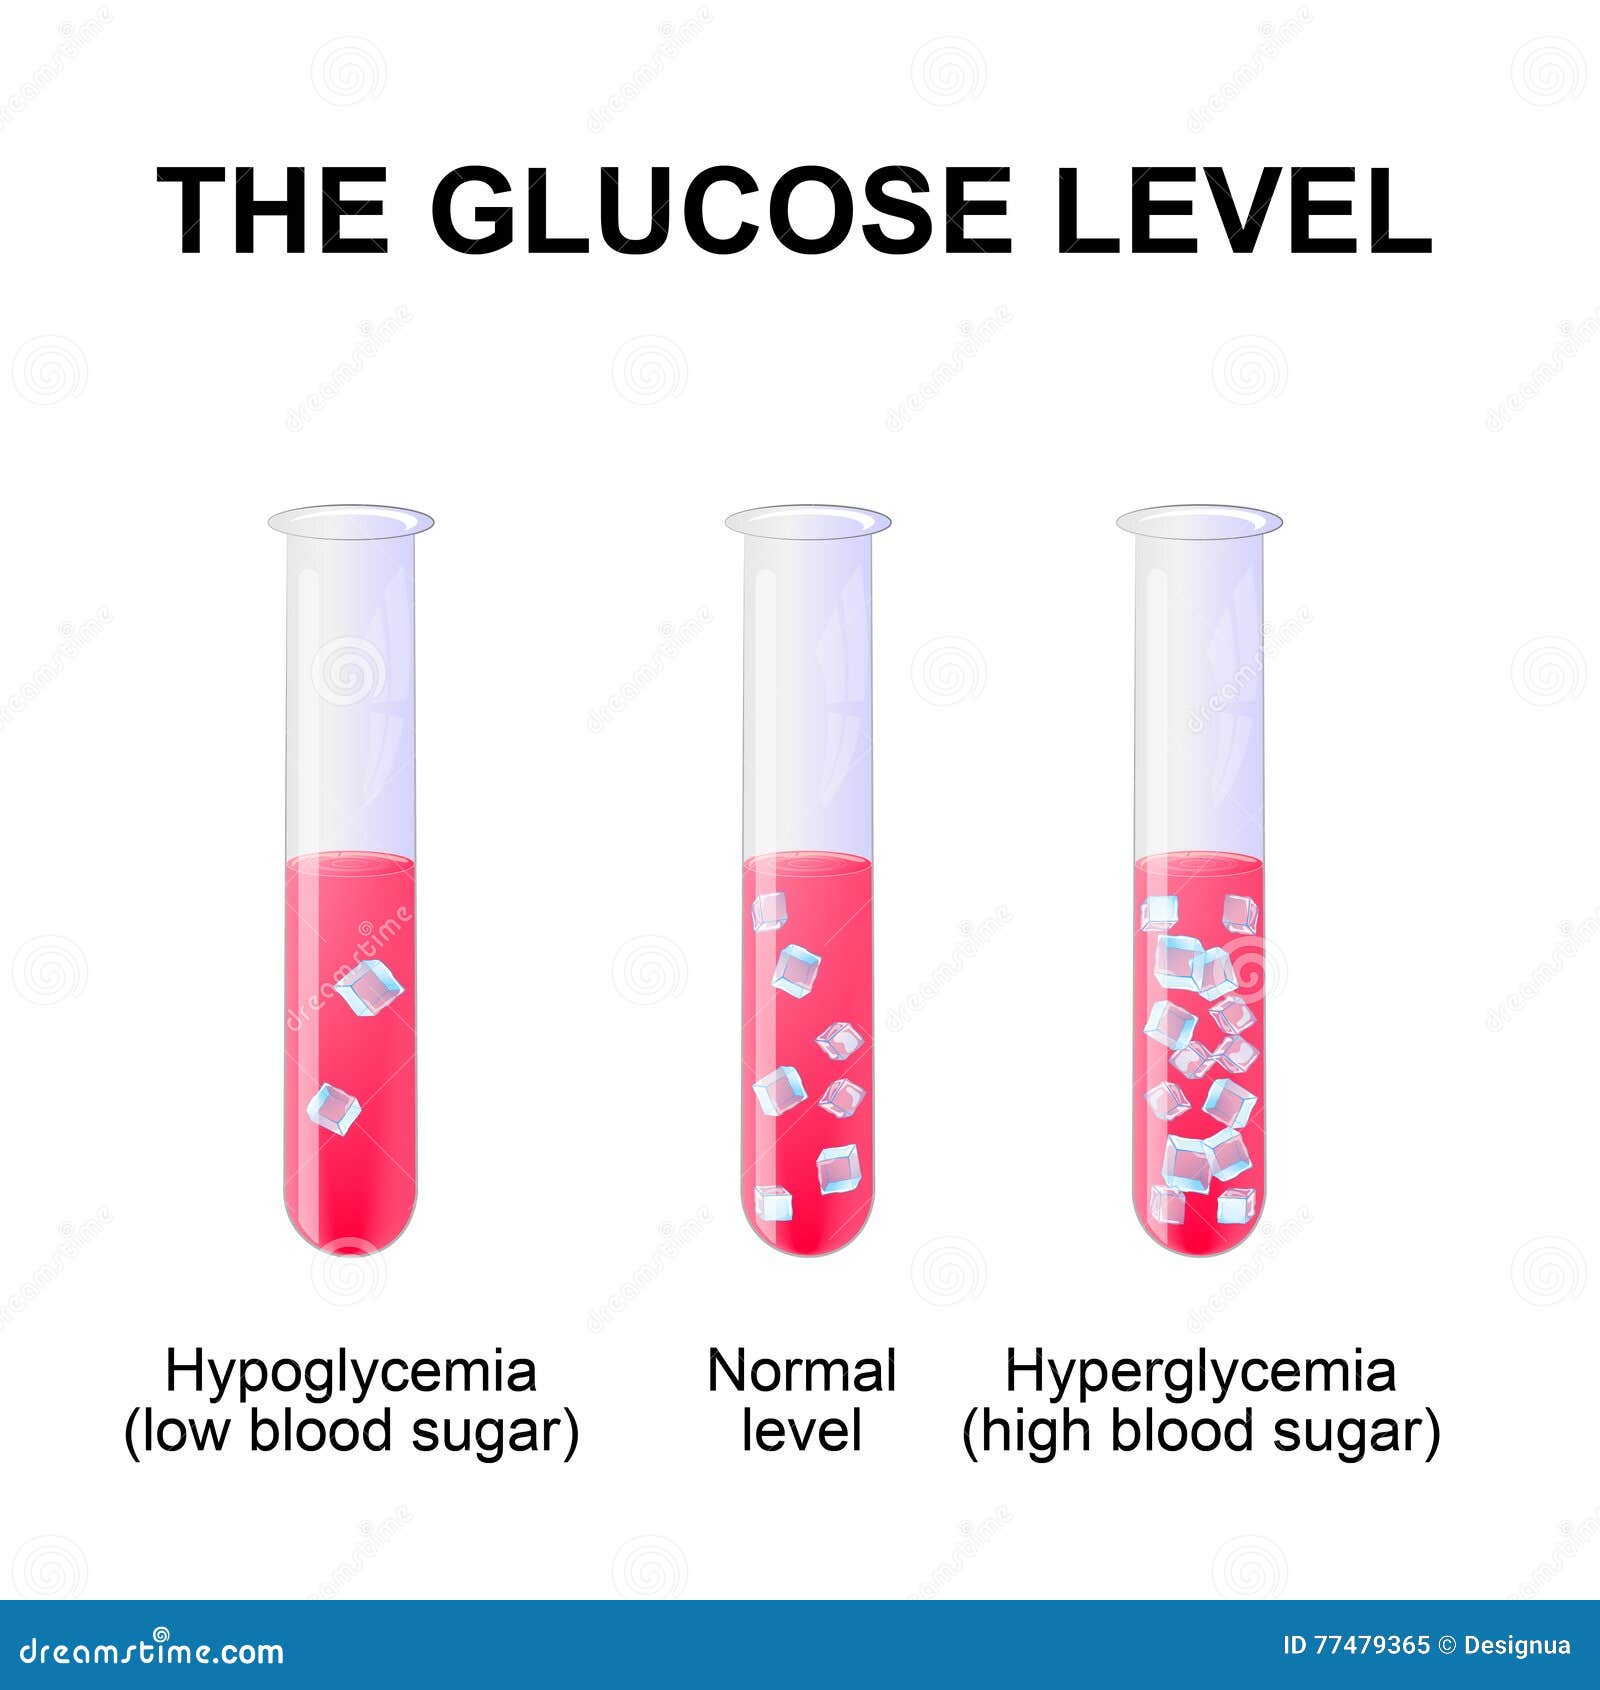 Кровь на сахар курить можно. Normal Blood glucose Level. Glucose in Blood. Уровень сахара в крови - векторные картинки. Normal glucose Level in Blood.